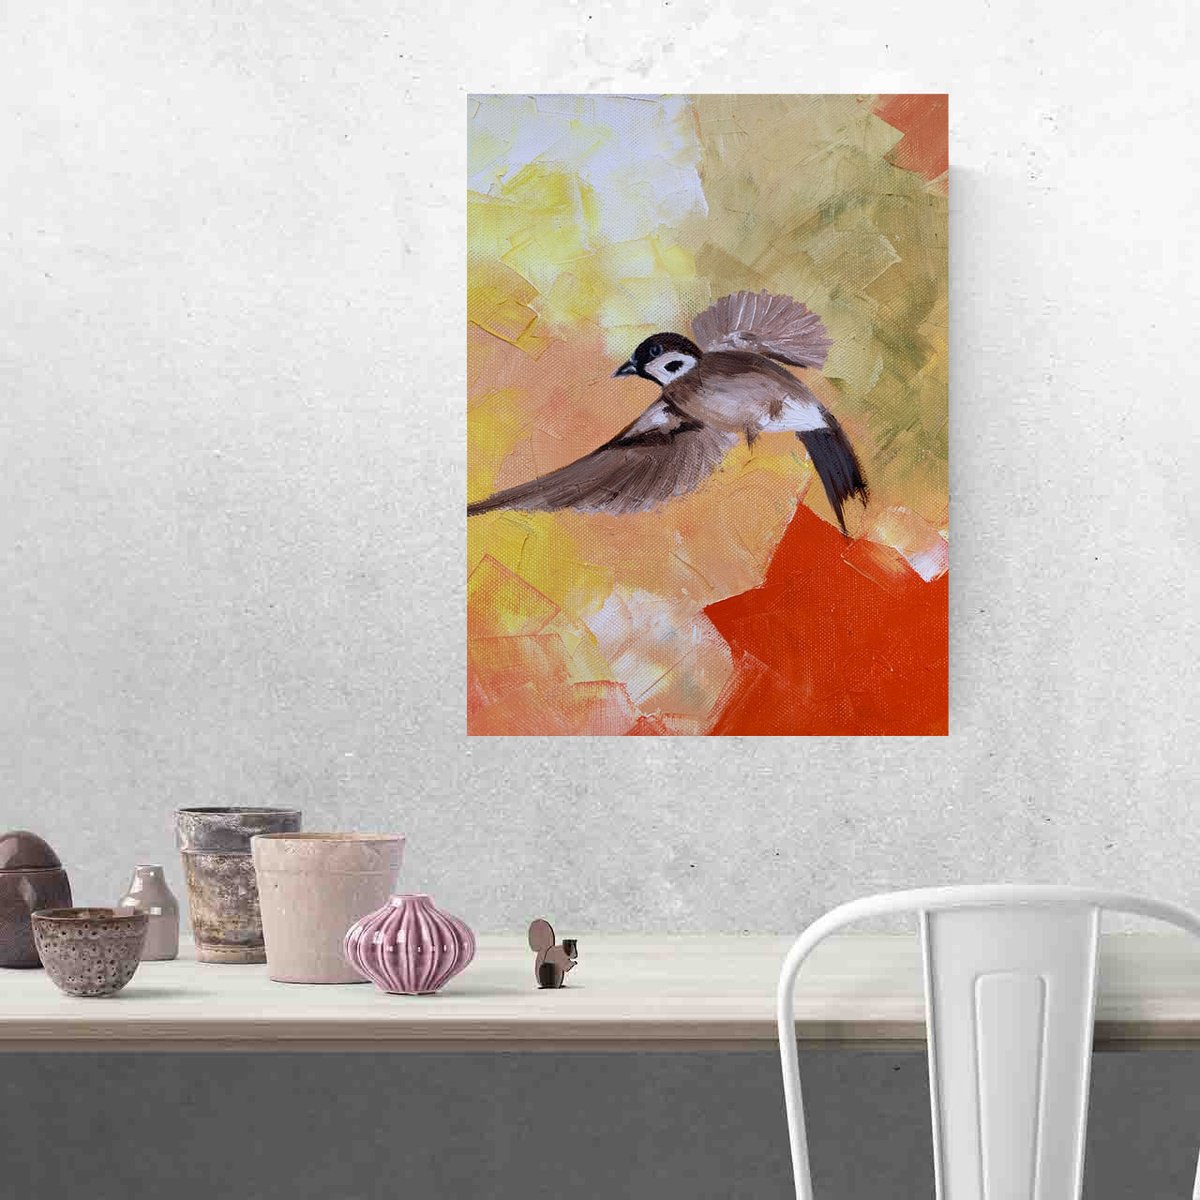 Orange la la mood oil painting on paper / sparrow bird / bird in flight by Olha Gitman